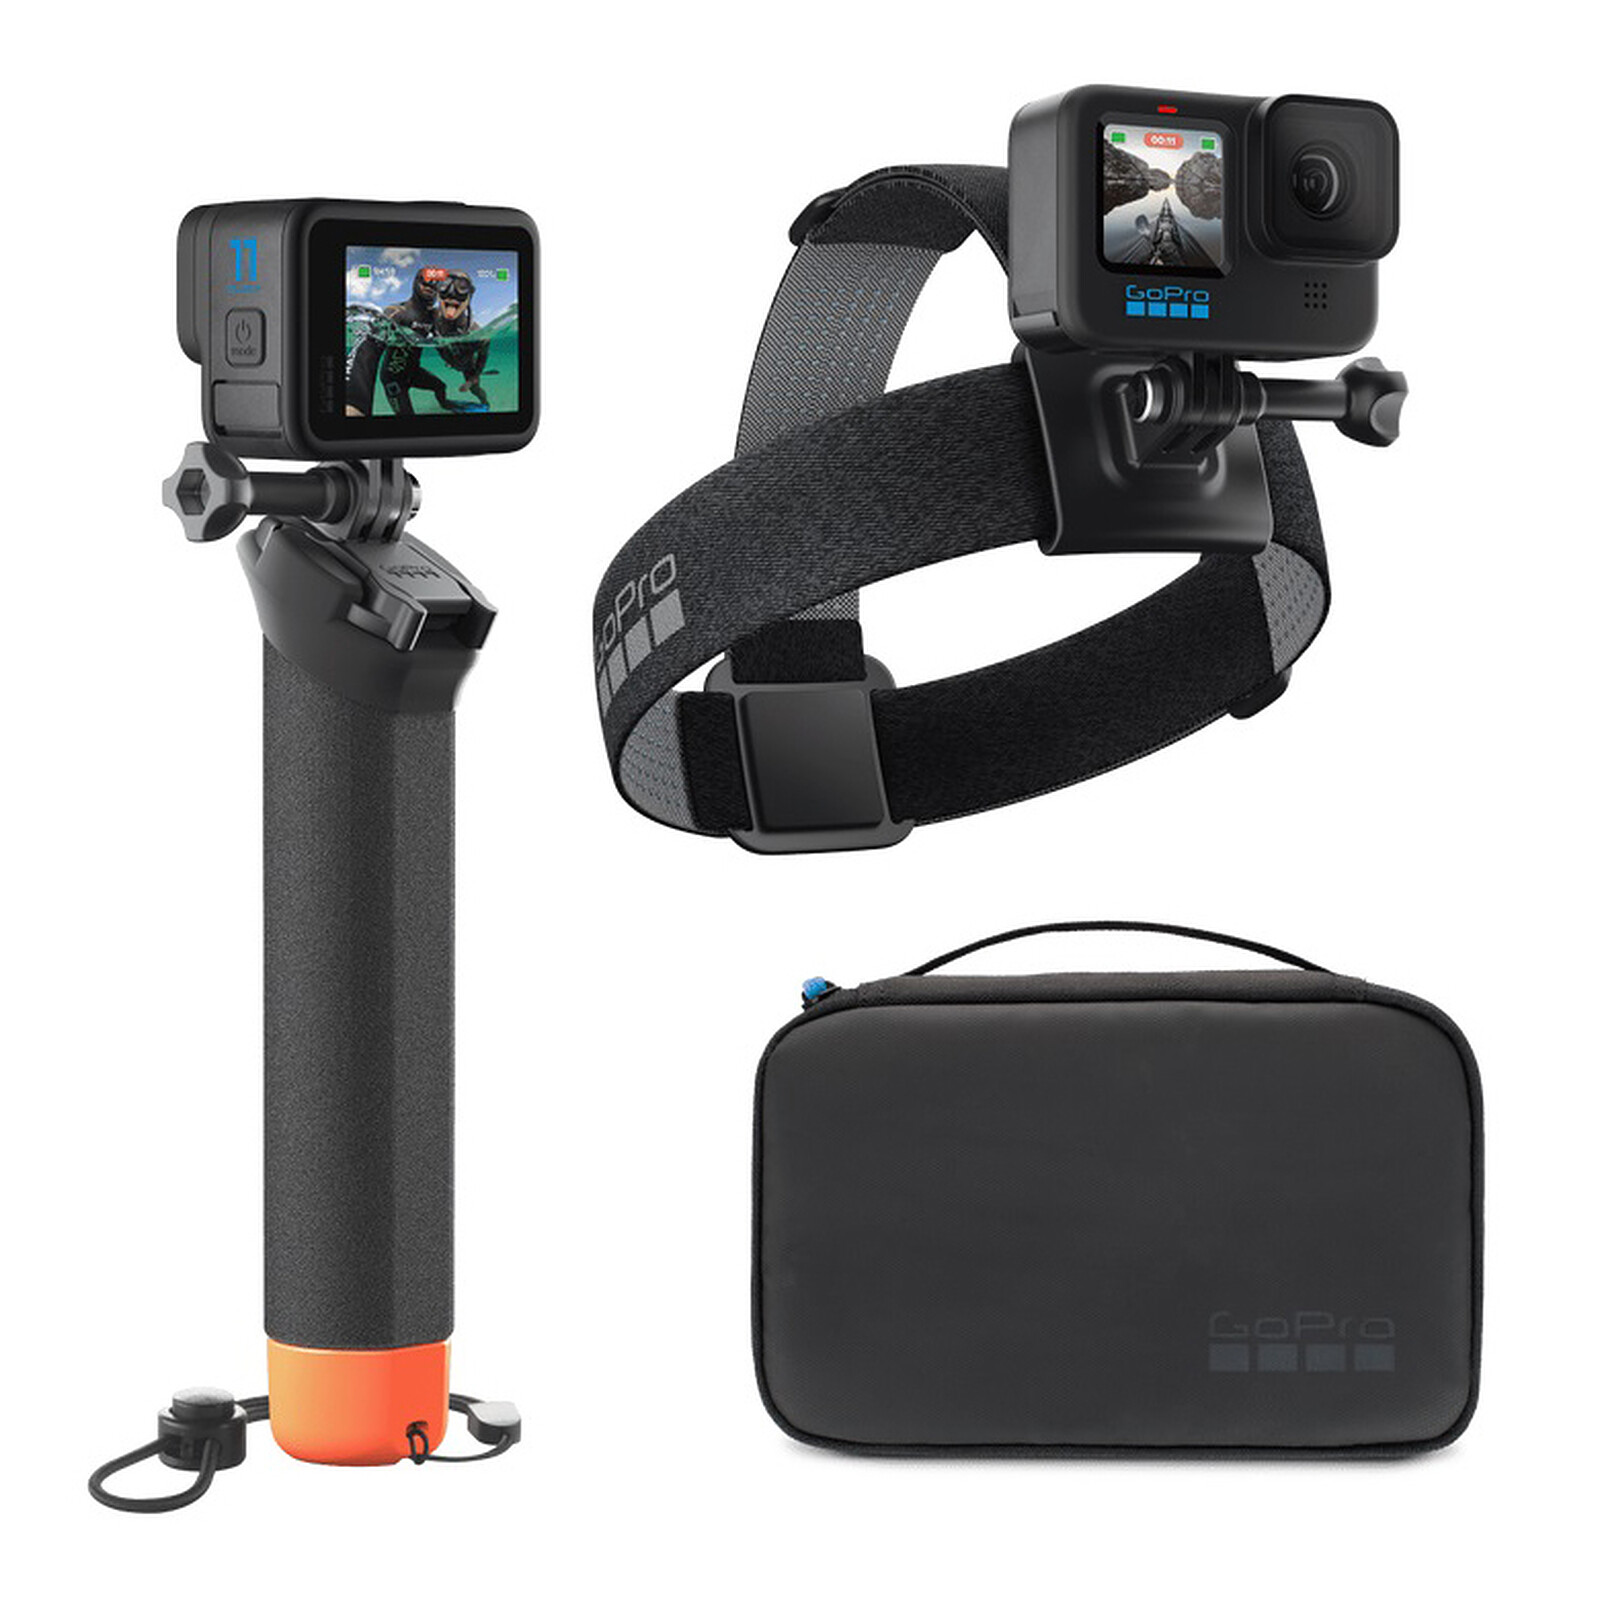 Kit d'accessoires de caméra d'action pour GoPro,montage pour GoPro